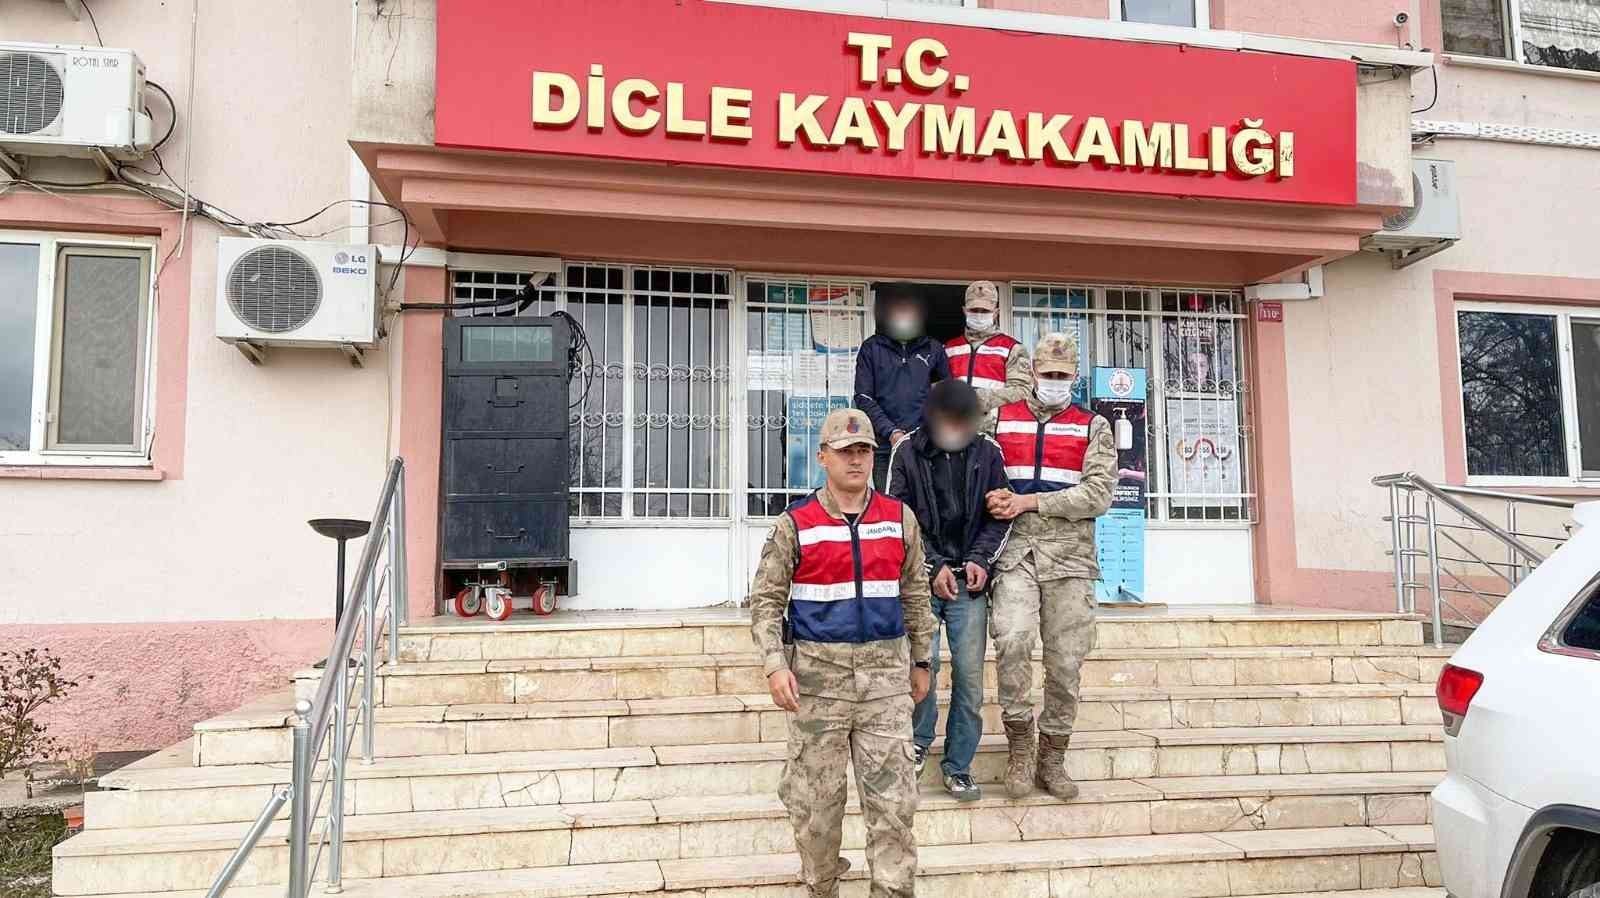 Diyarbakır’da baz istasyonu hırsızları JASAT’tan kaçamadı #diyarbakir